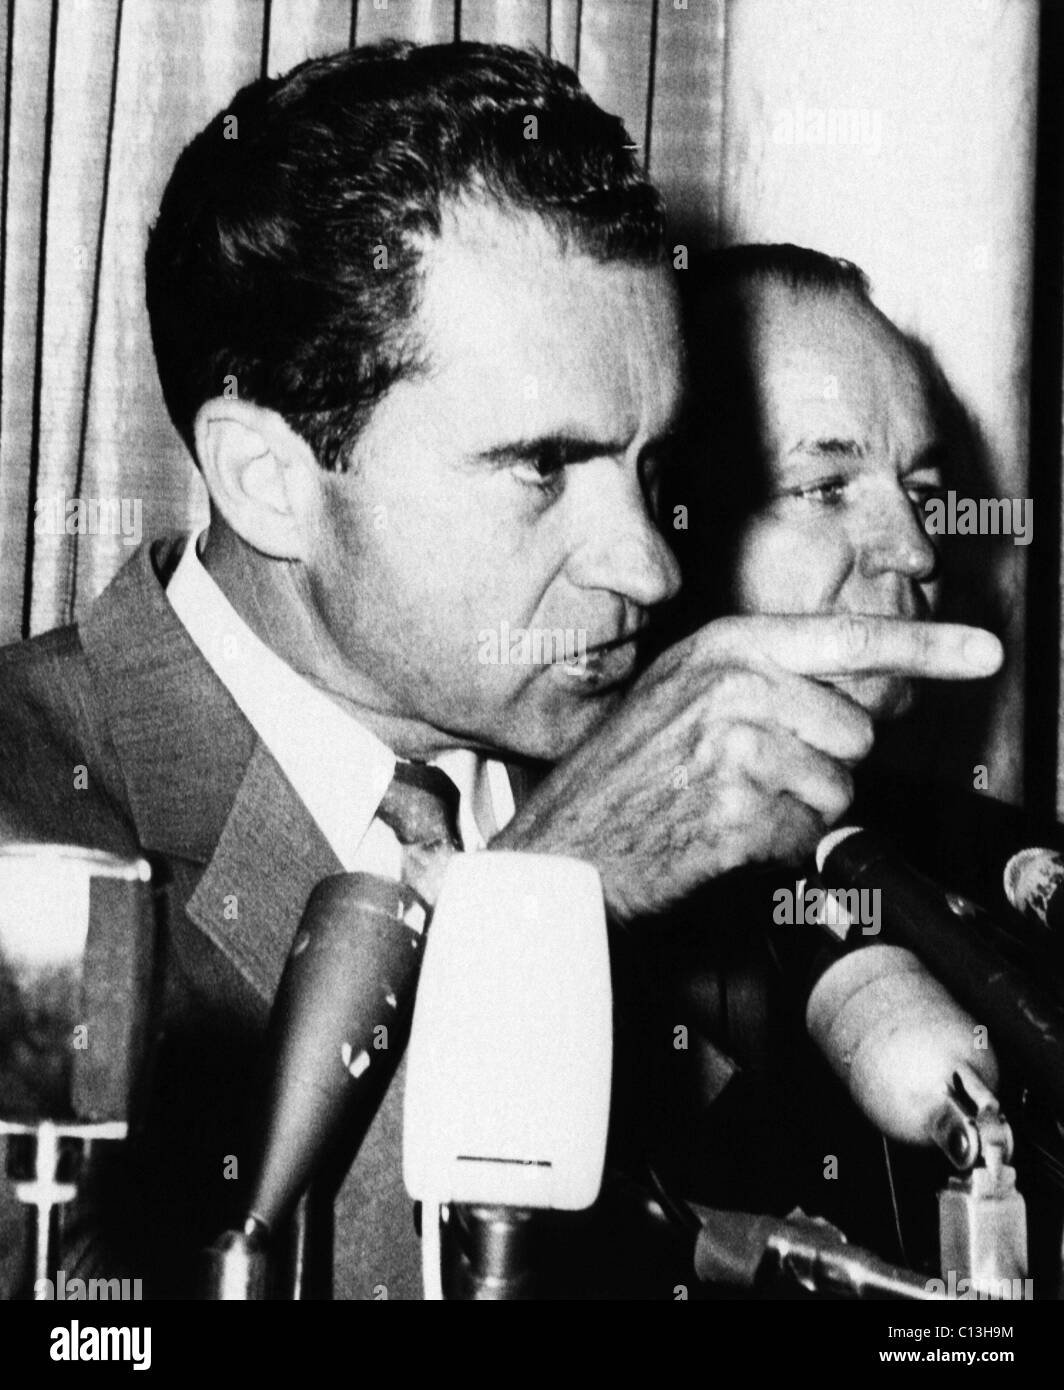 La vice-présidence de Nixon. Vice-président (et futur président des Etats-Unis) Richard Nixon lors d'une conférence de presse au cours de sa campagne pour la nomination présidentielle des Républicains, Camden, NJ, 1960. Banque D'Images